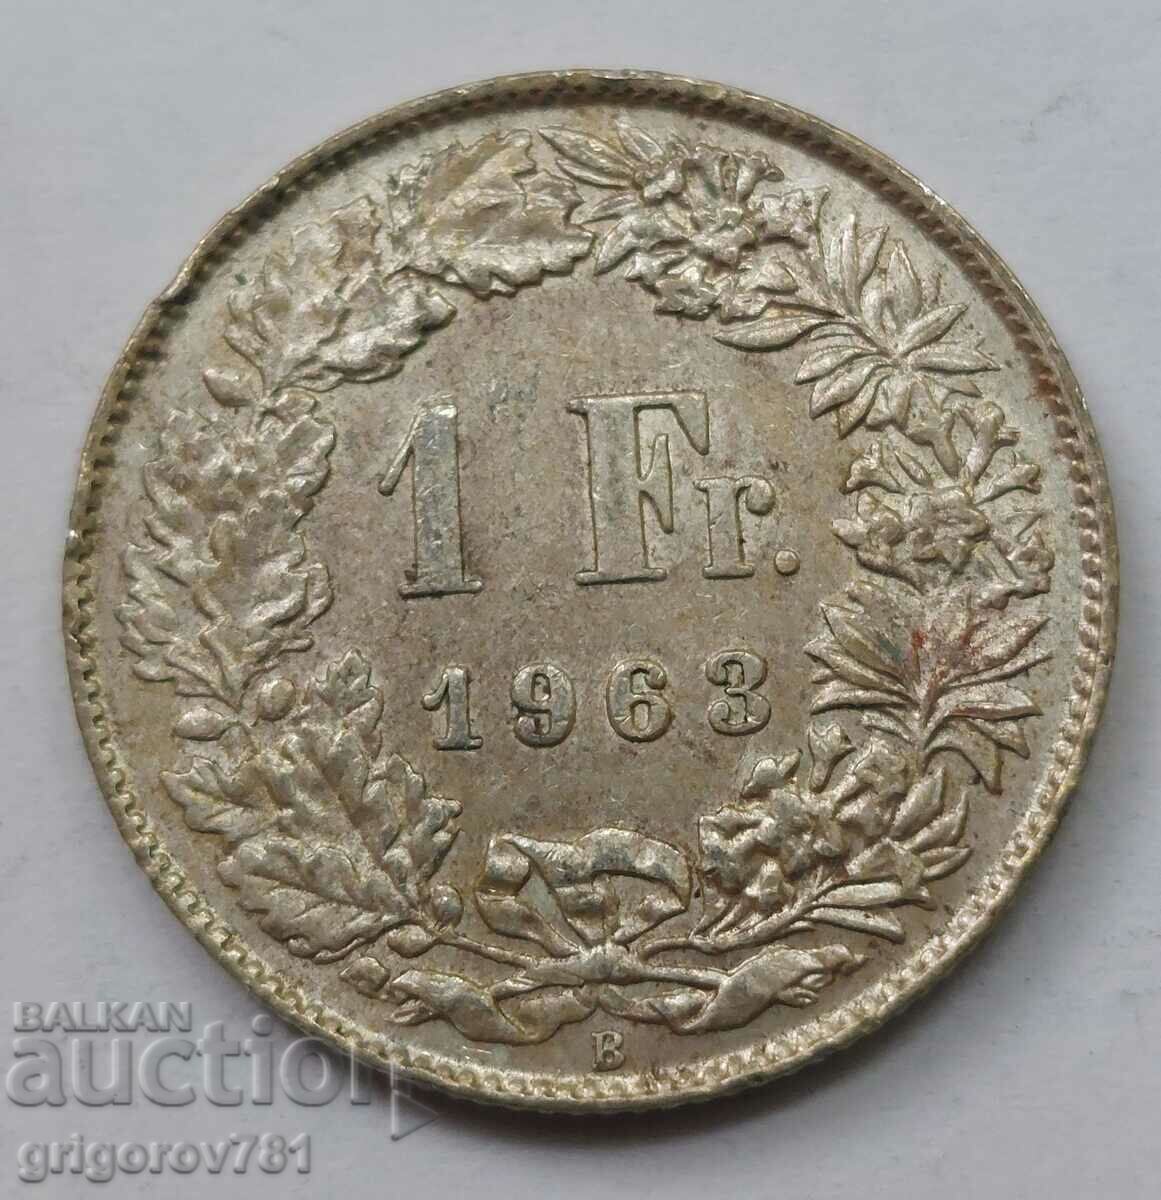 Ασημένιο 1 Φράγκο Ελβετία 1963 Β - Ασημένιο νόμισμα #34